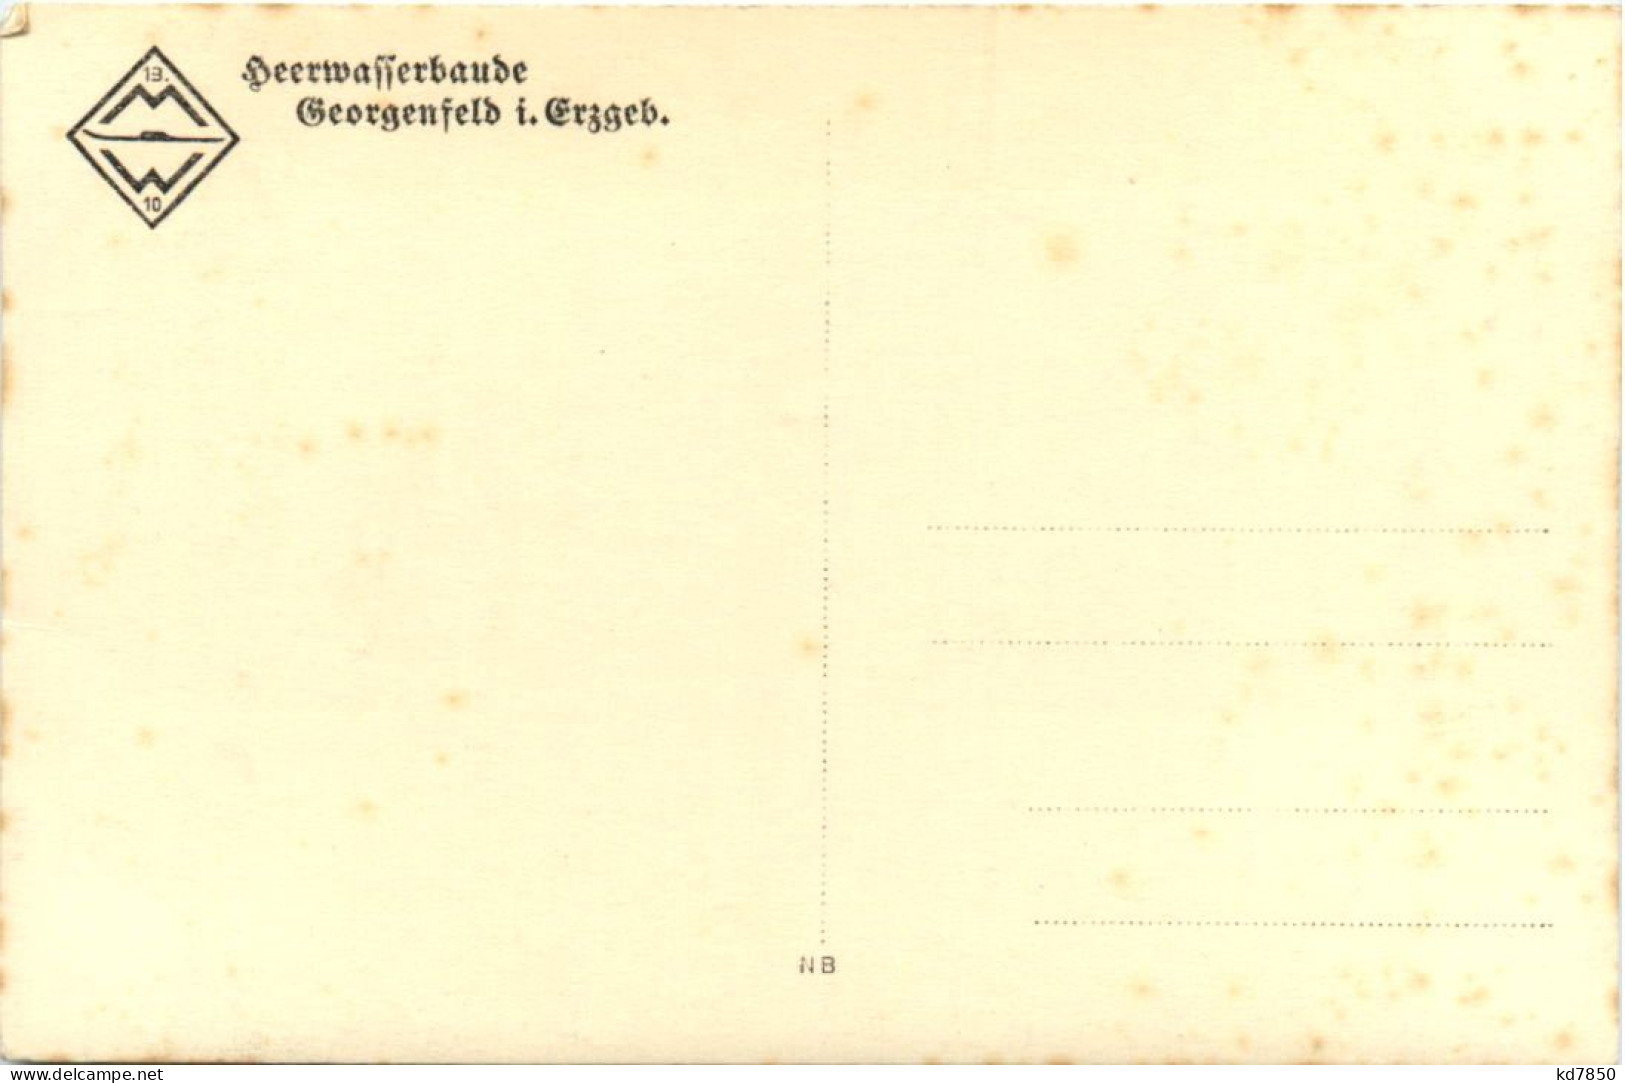 Georgenfeld I. Erzgeb., Heerwasserbaude - Altenberg